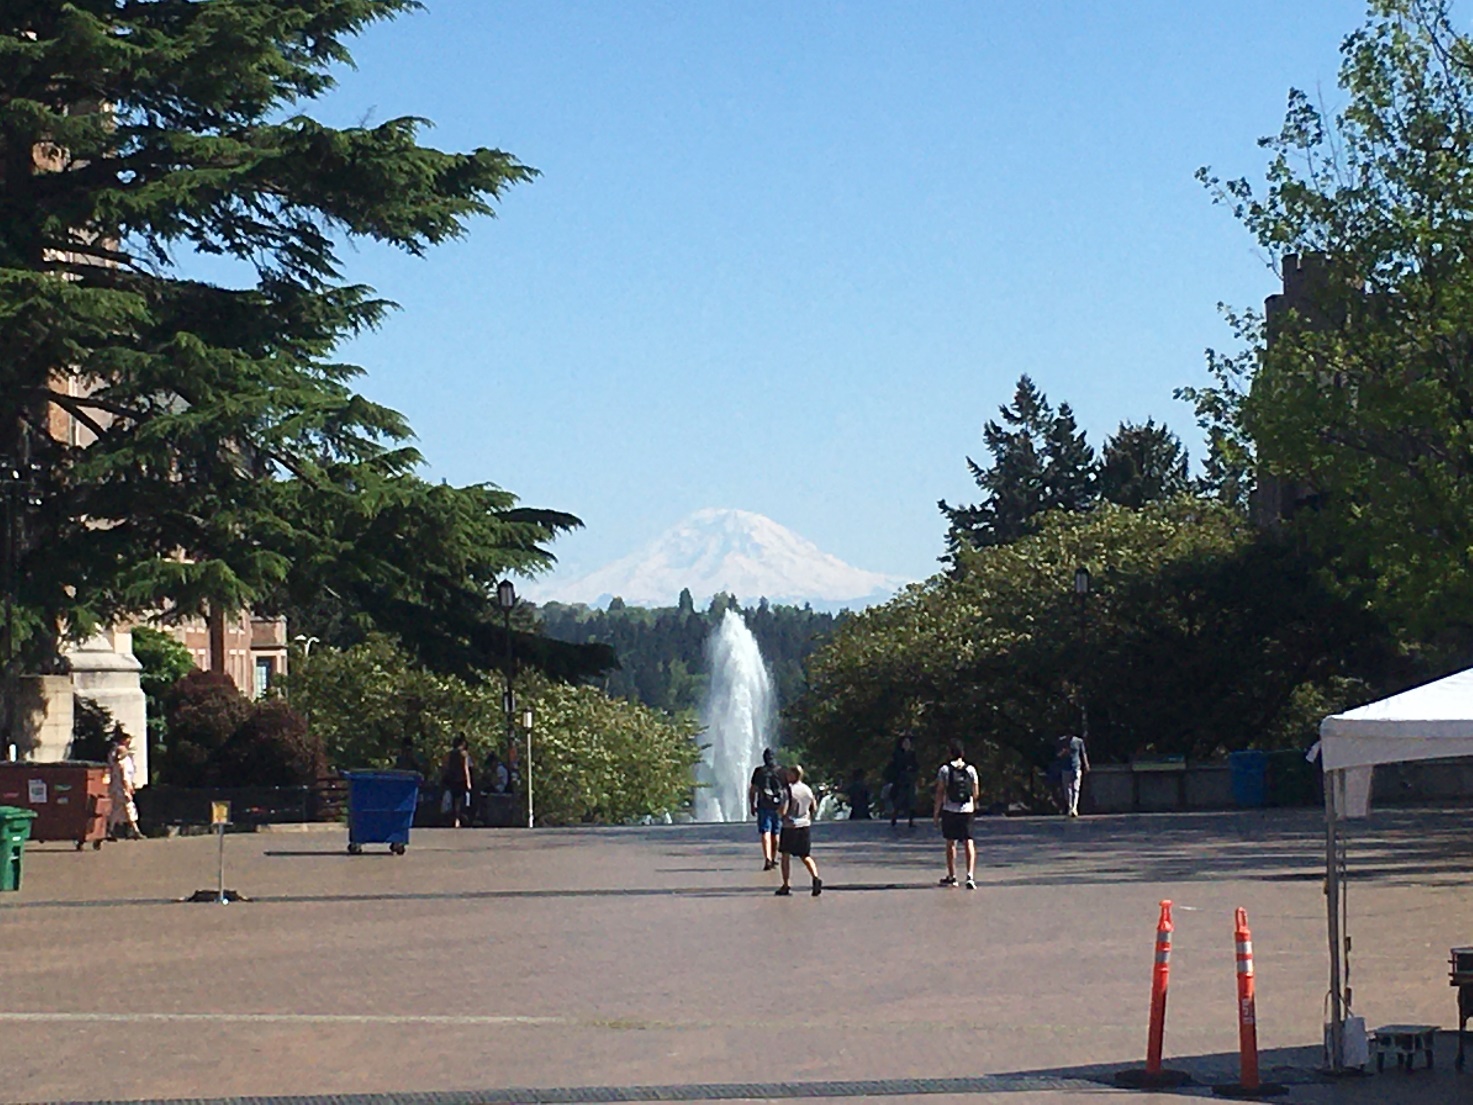 ワシントン大学のキャンパスにある噴水